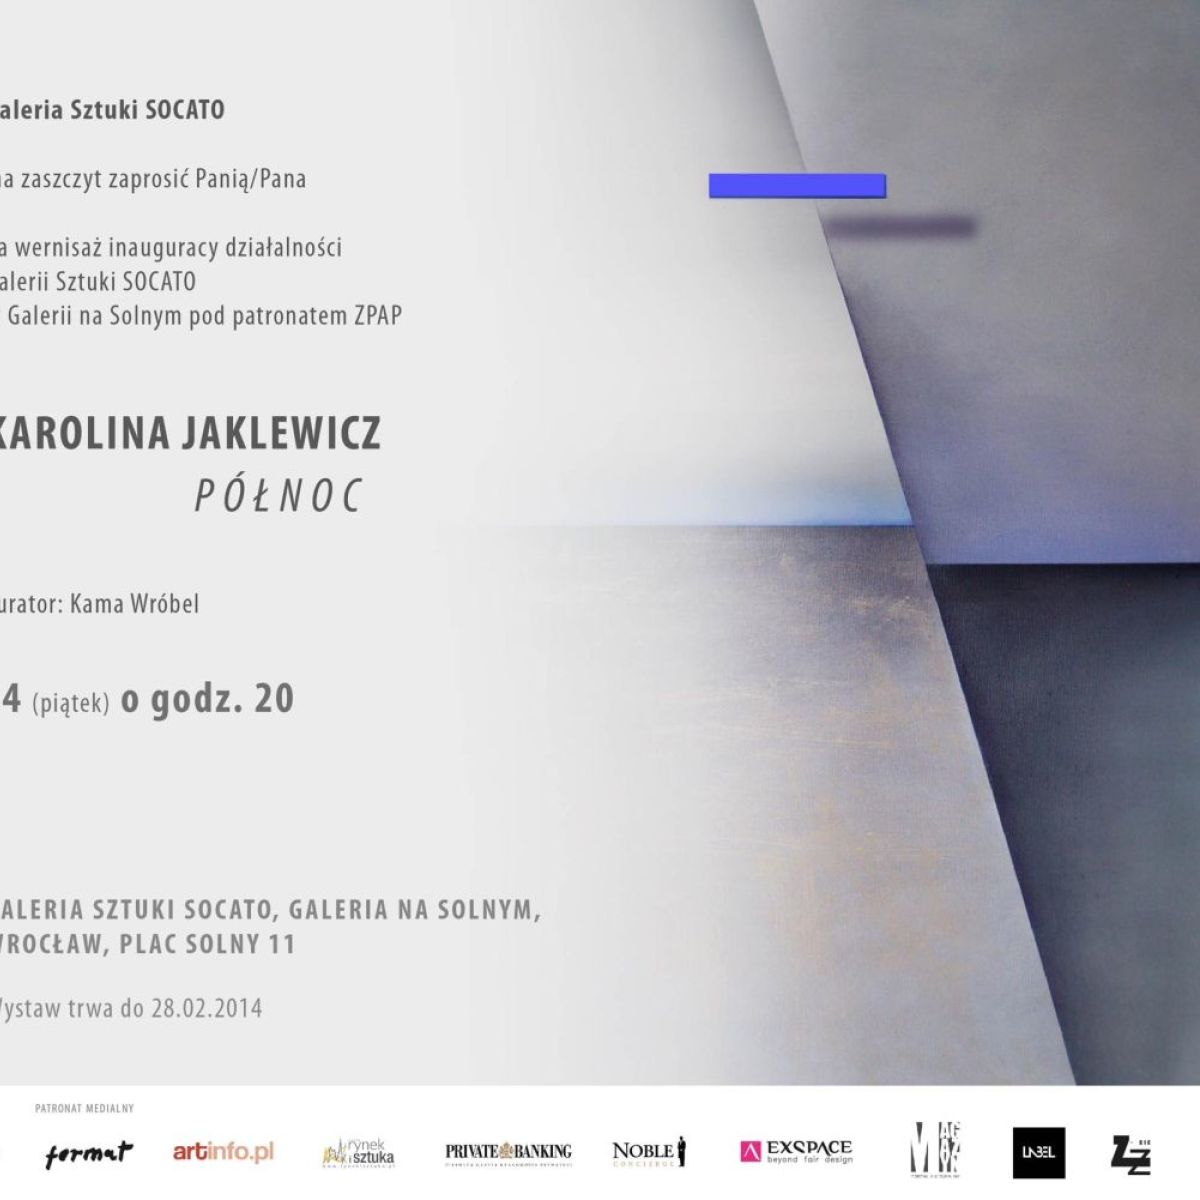 Zapraszamy na wernisaż malarstwa Karoliny Jaklewicz ''Północ'' inaugurujący działalność Galerii Sztuki Socato na Placu Solnym 11